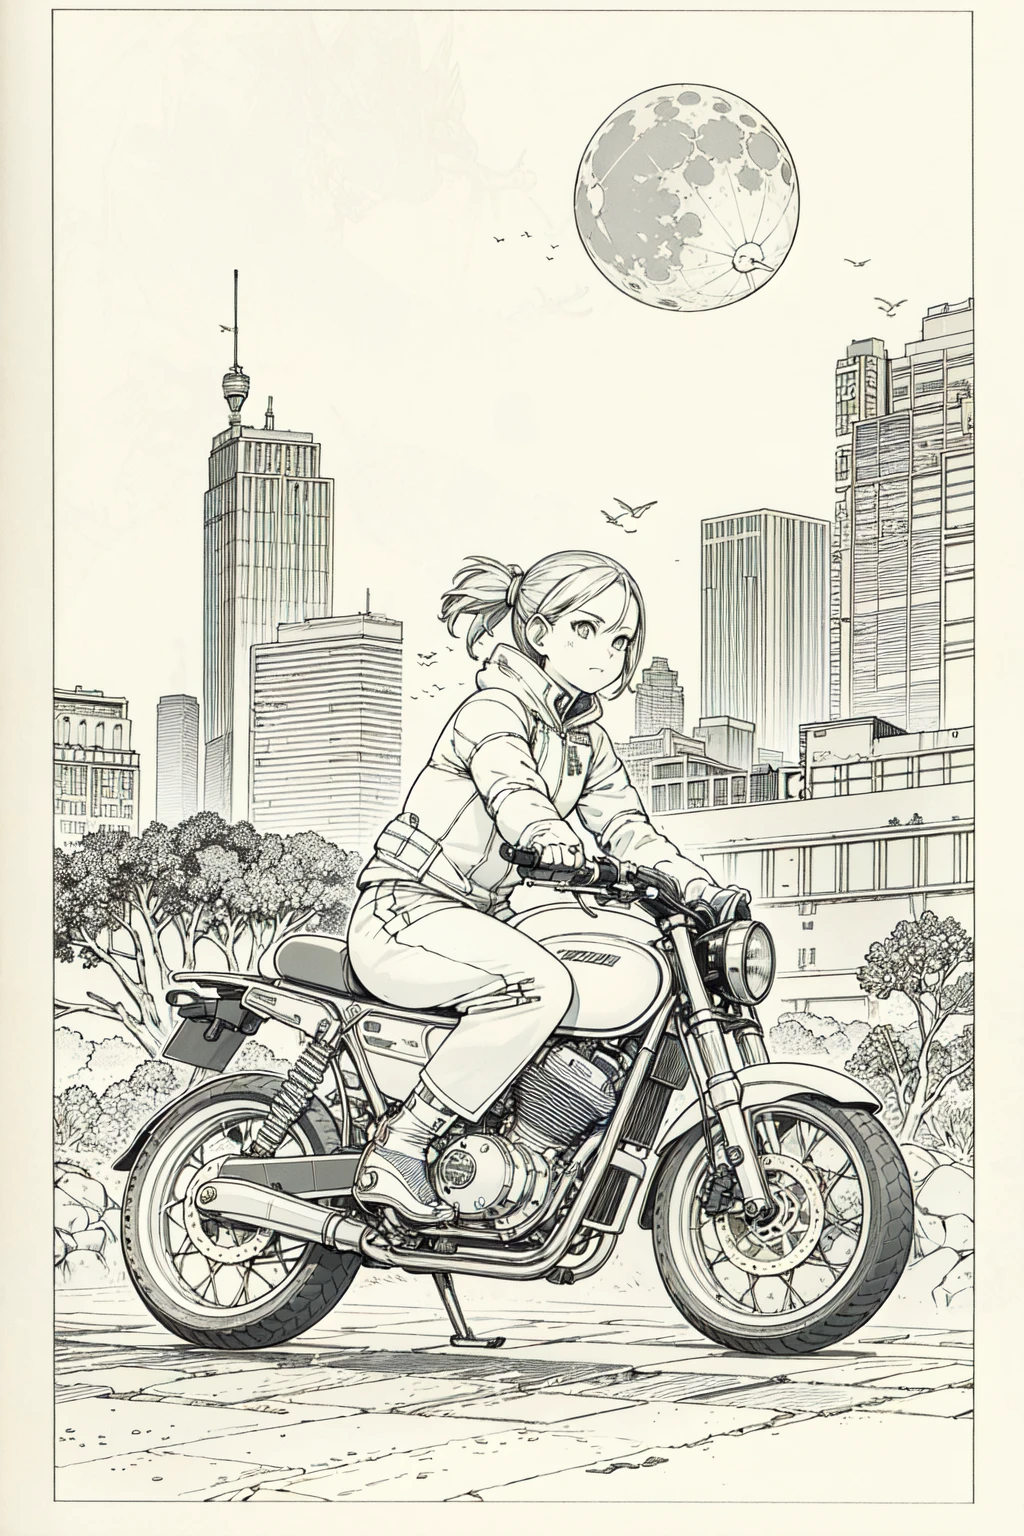 最好的质量, 杰作, 照片, 4k, 照片realistic, 非常详细,
1女孩骑摩托车, 科技服装, 赛博朋克城市, 独自的, 未来派, 背景中的巨大月亮, 黑与白, 作者：鸟山明, 特写,
